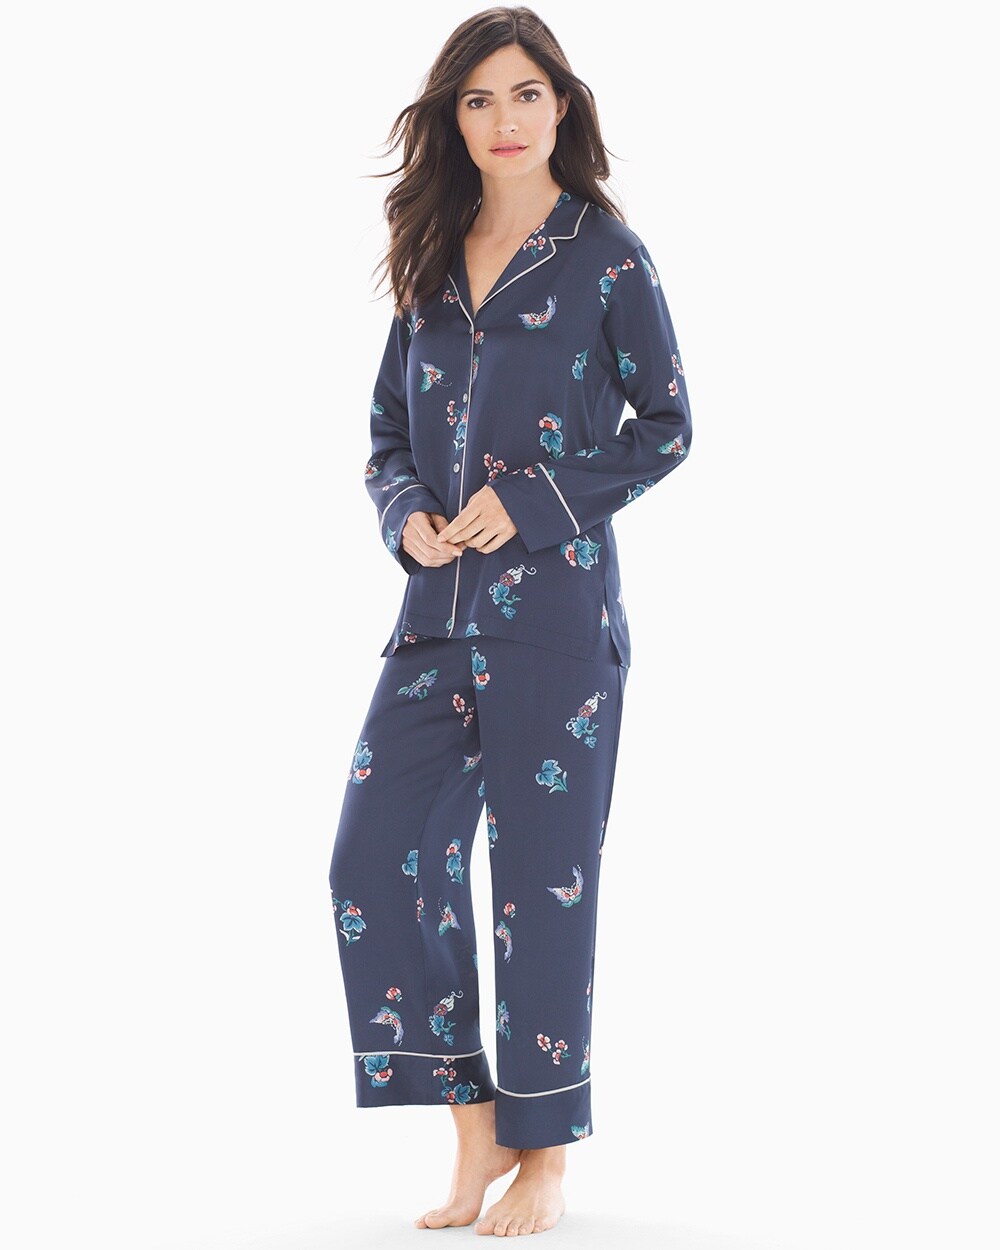 The Coziest Soma Pajamas (Bonus: They Have Pockets 